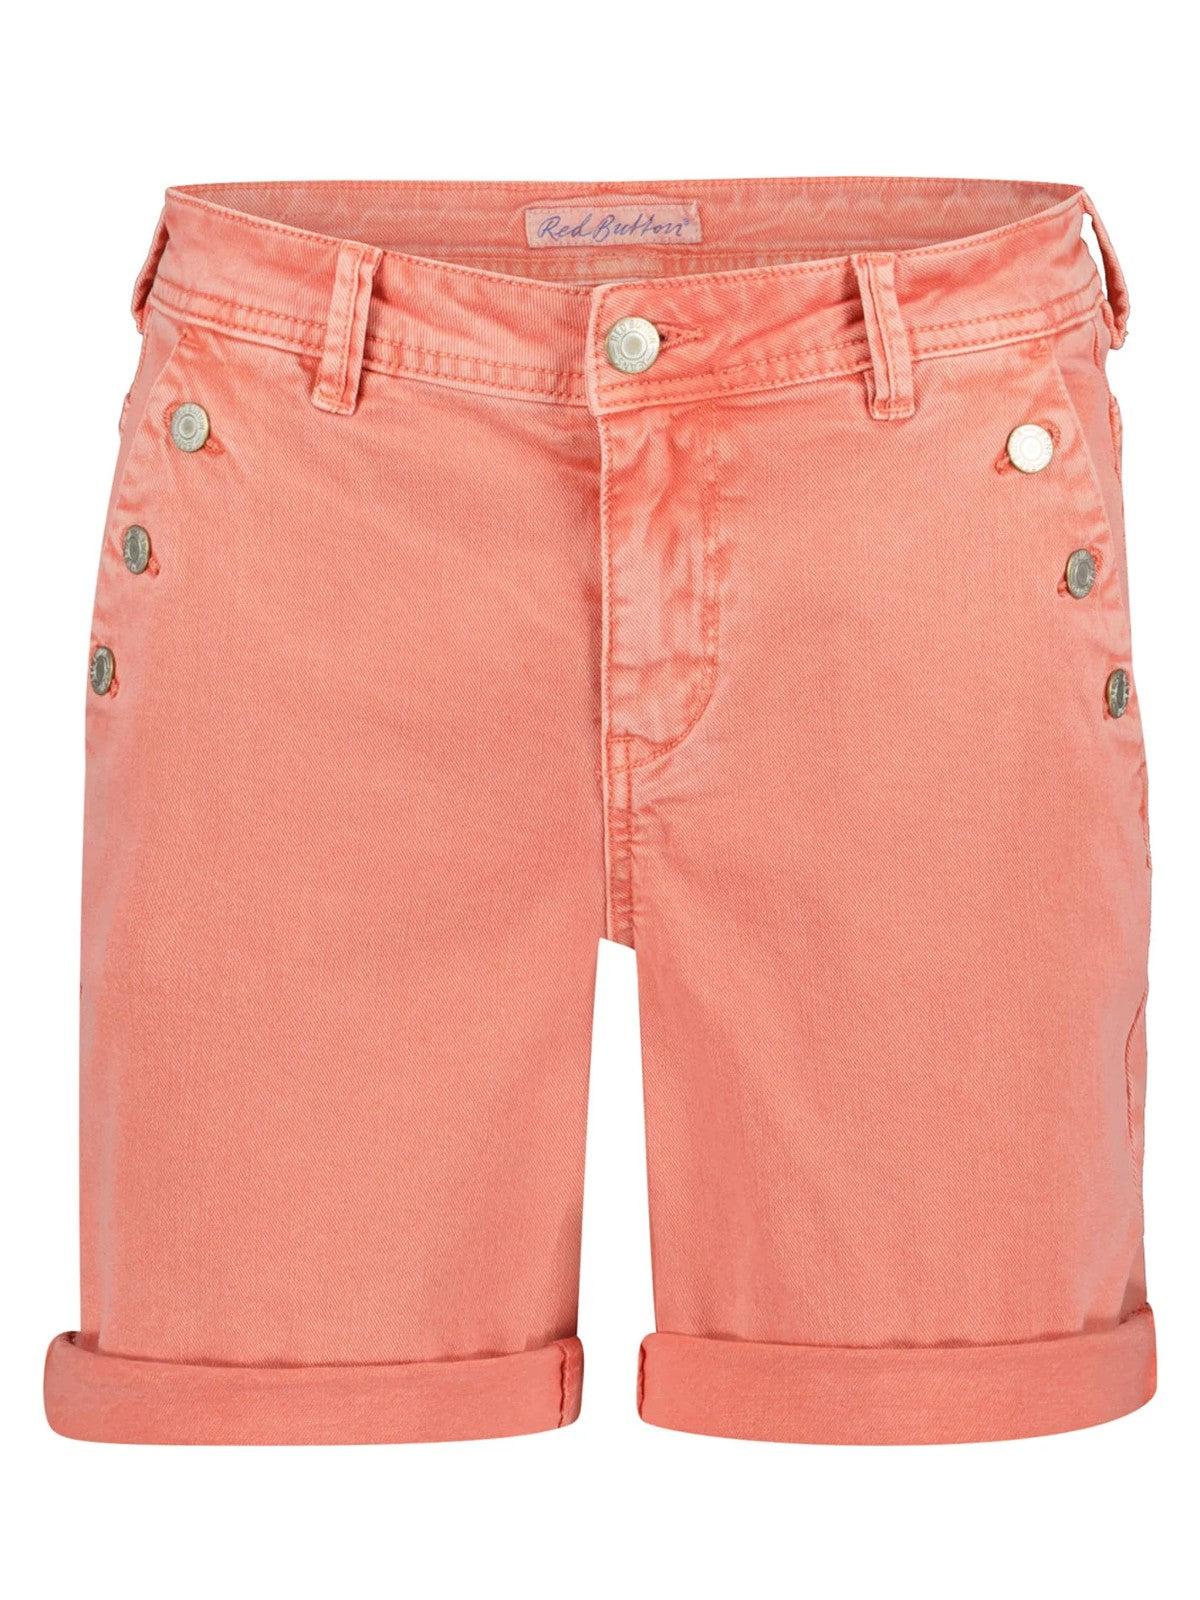 Bibette Coral Shorts